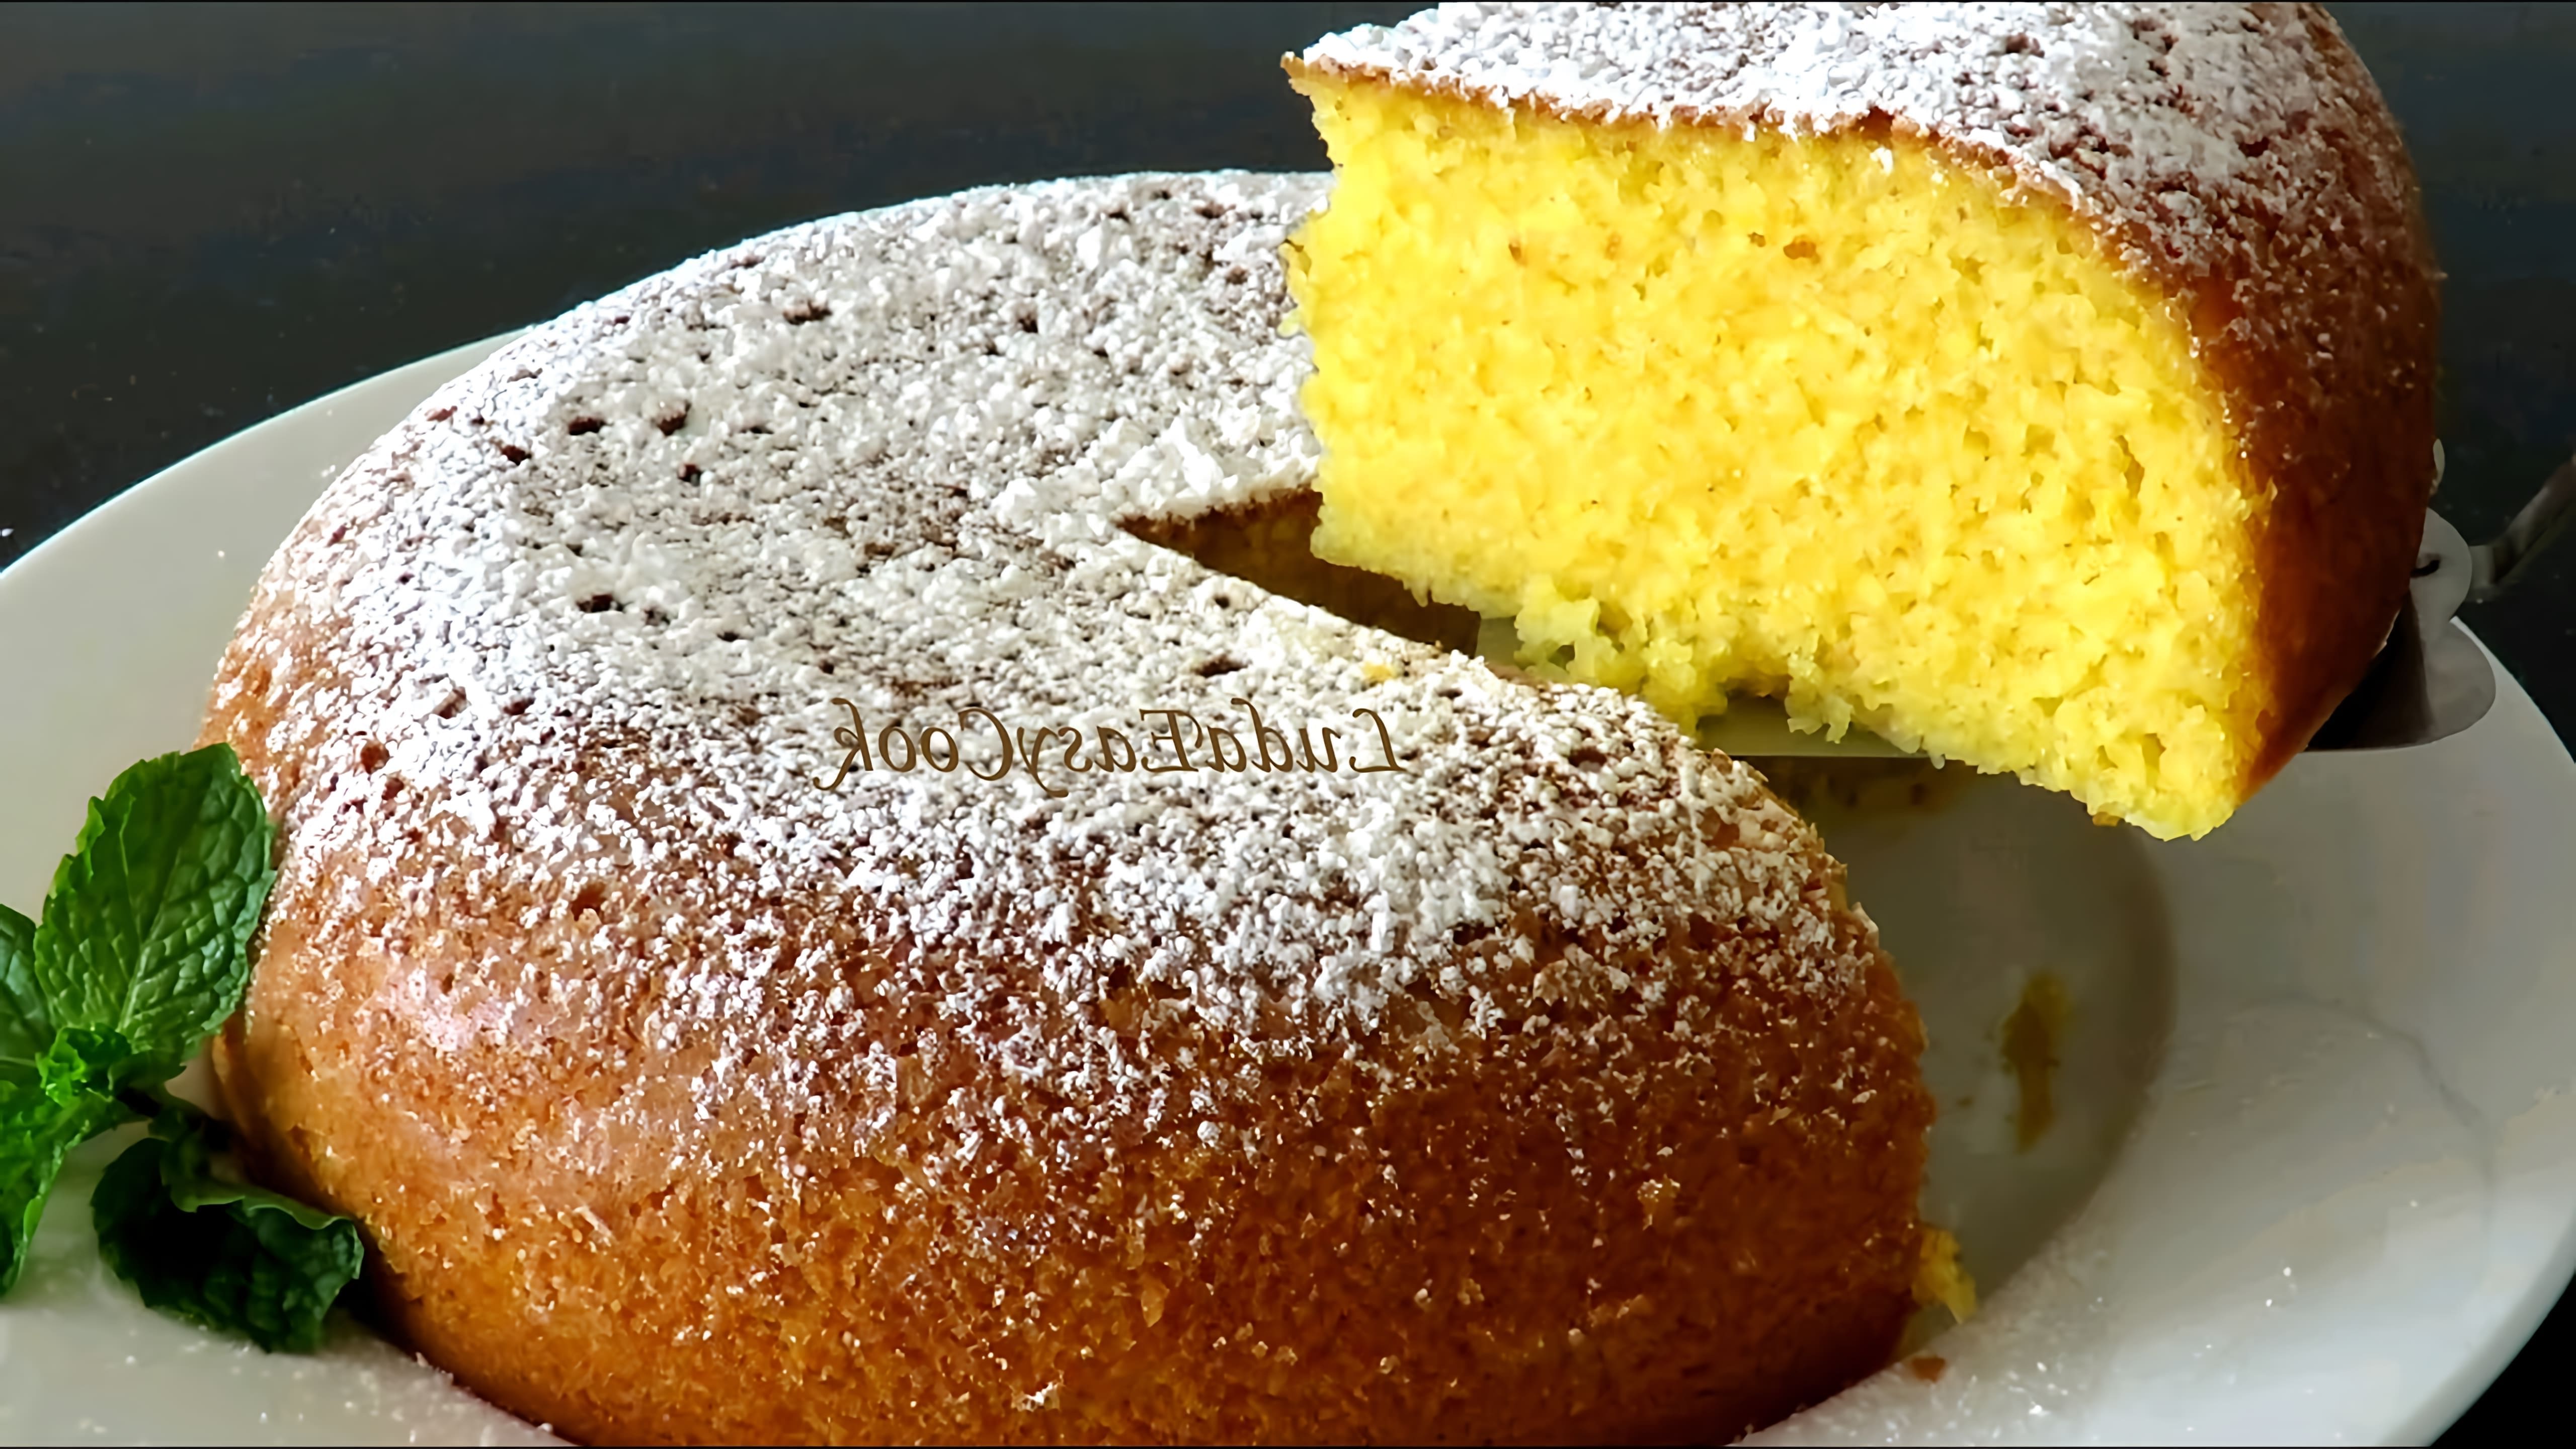 В этом видео демонстрируется рецепт бразильского пирога из кукурузной муки